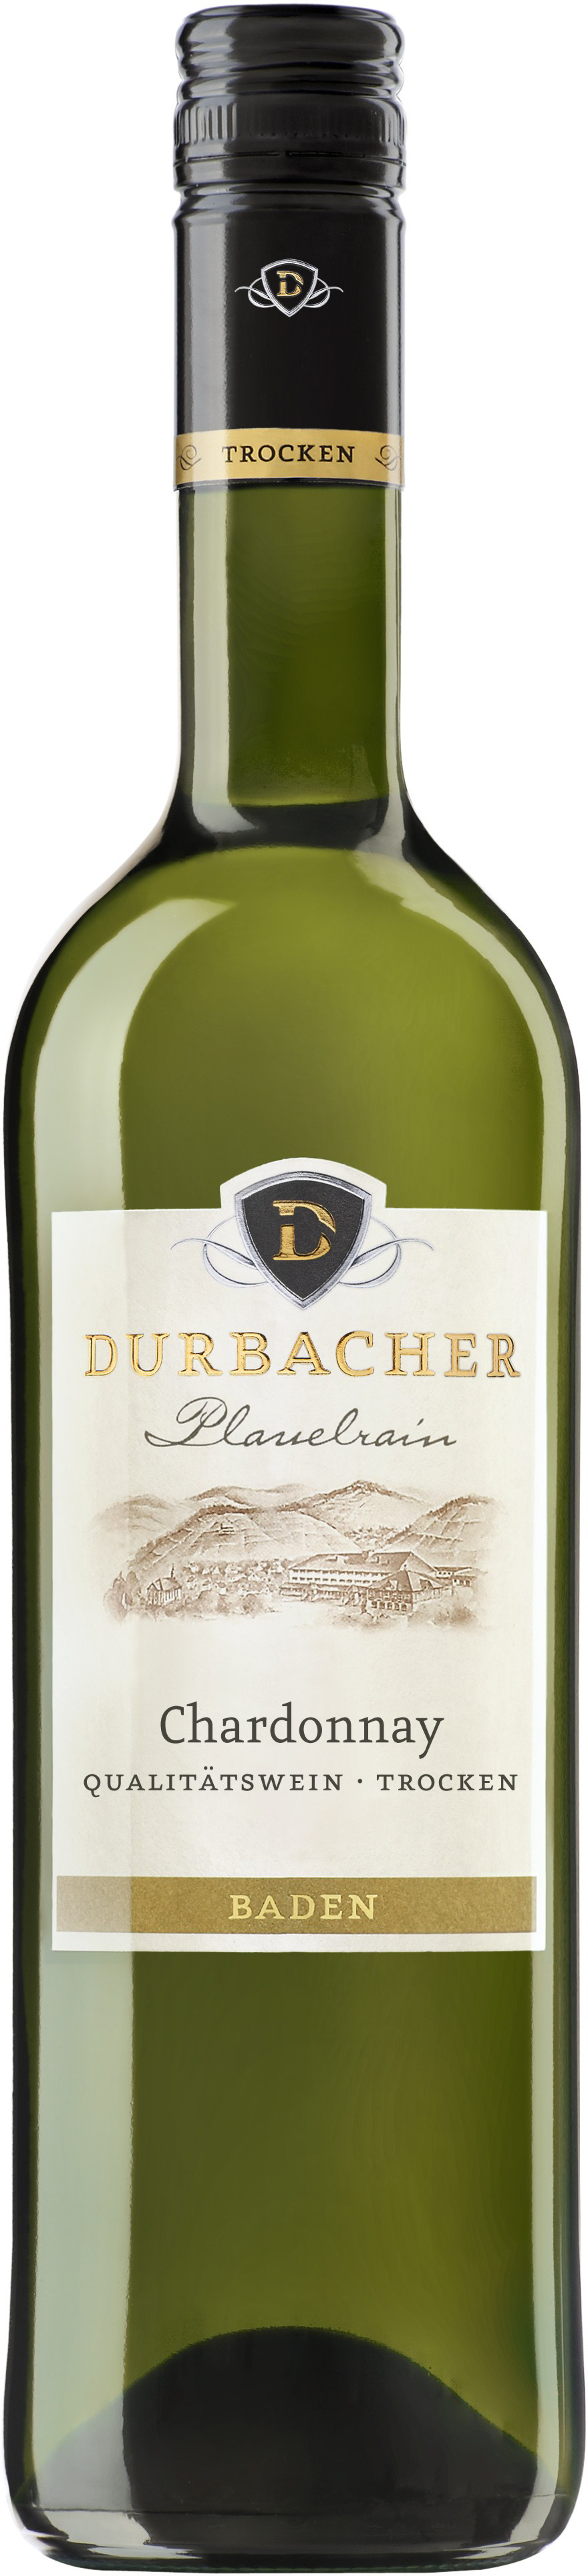 Durbacher Plauelrain Chardonnay Qualitätswein